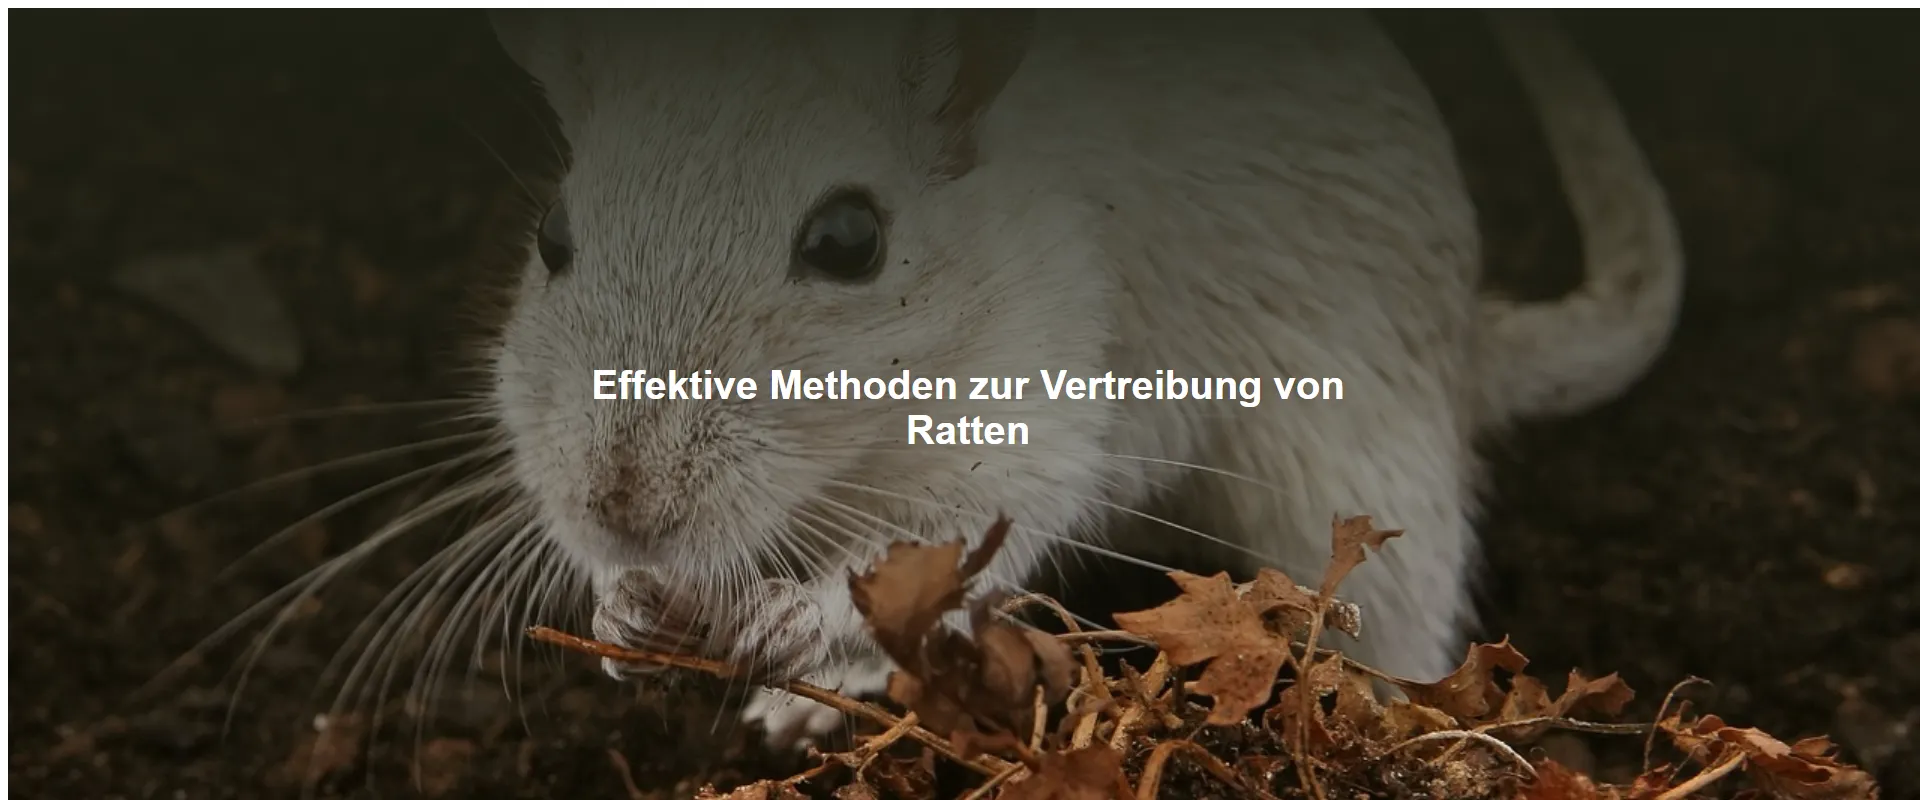 Effektive Methoden zur Vertreibung von Ratten